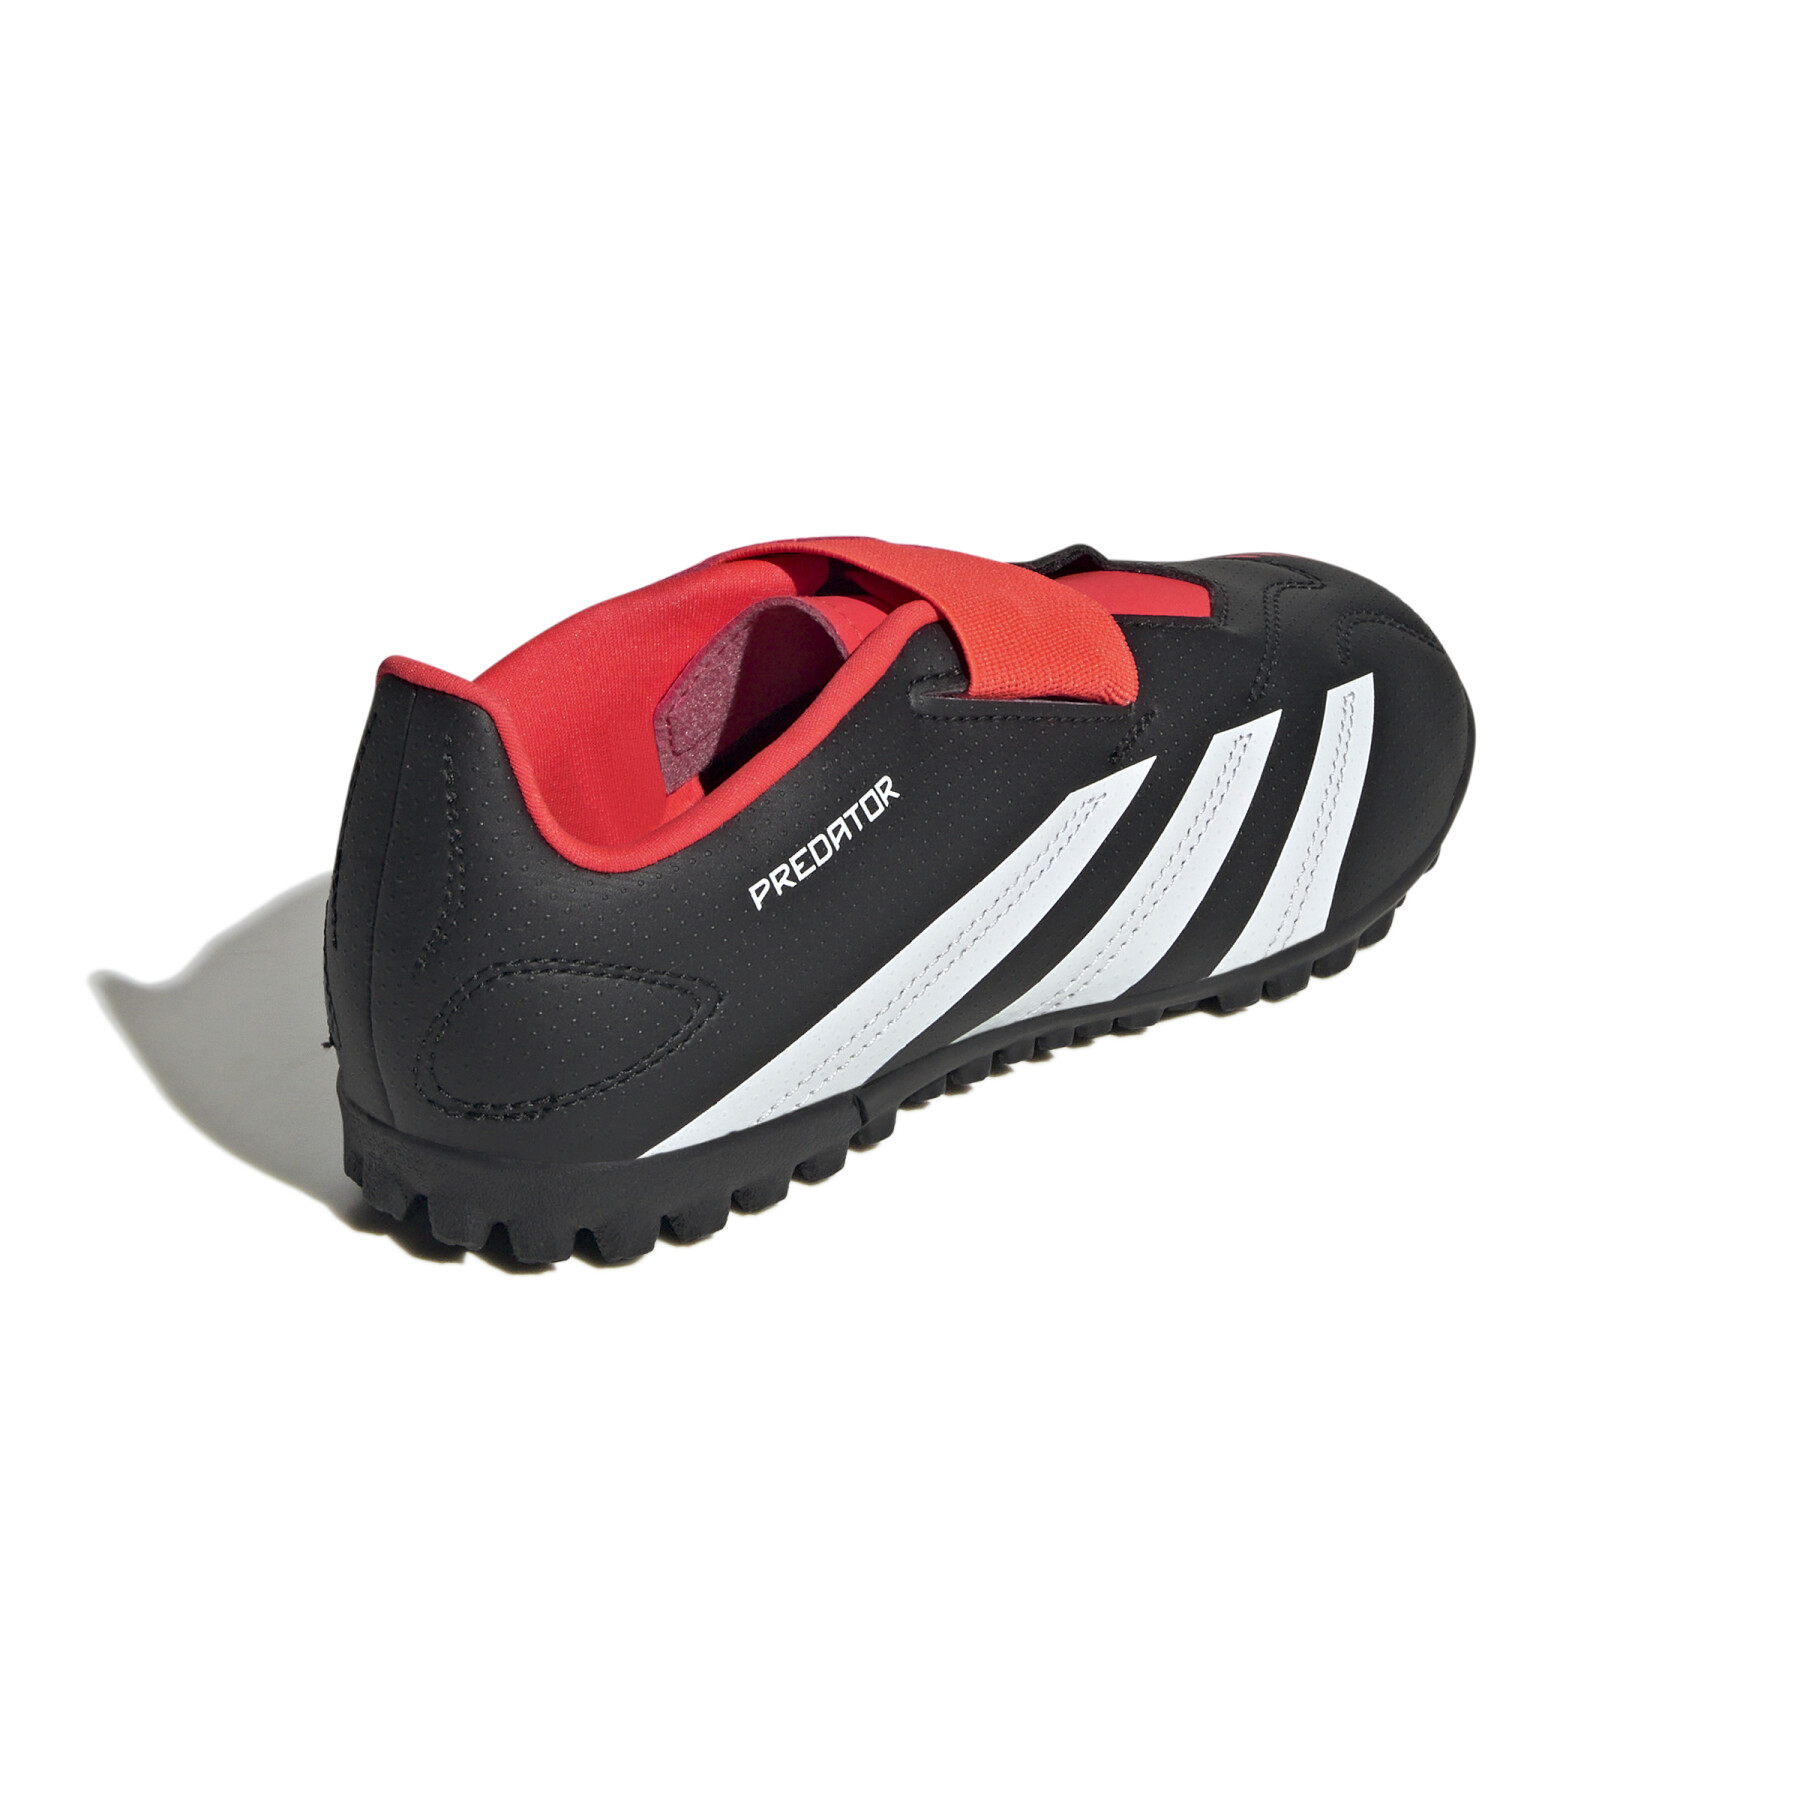 Sapatos de futebol para crianças adidas Predator Club Vel TF